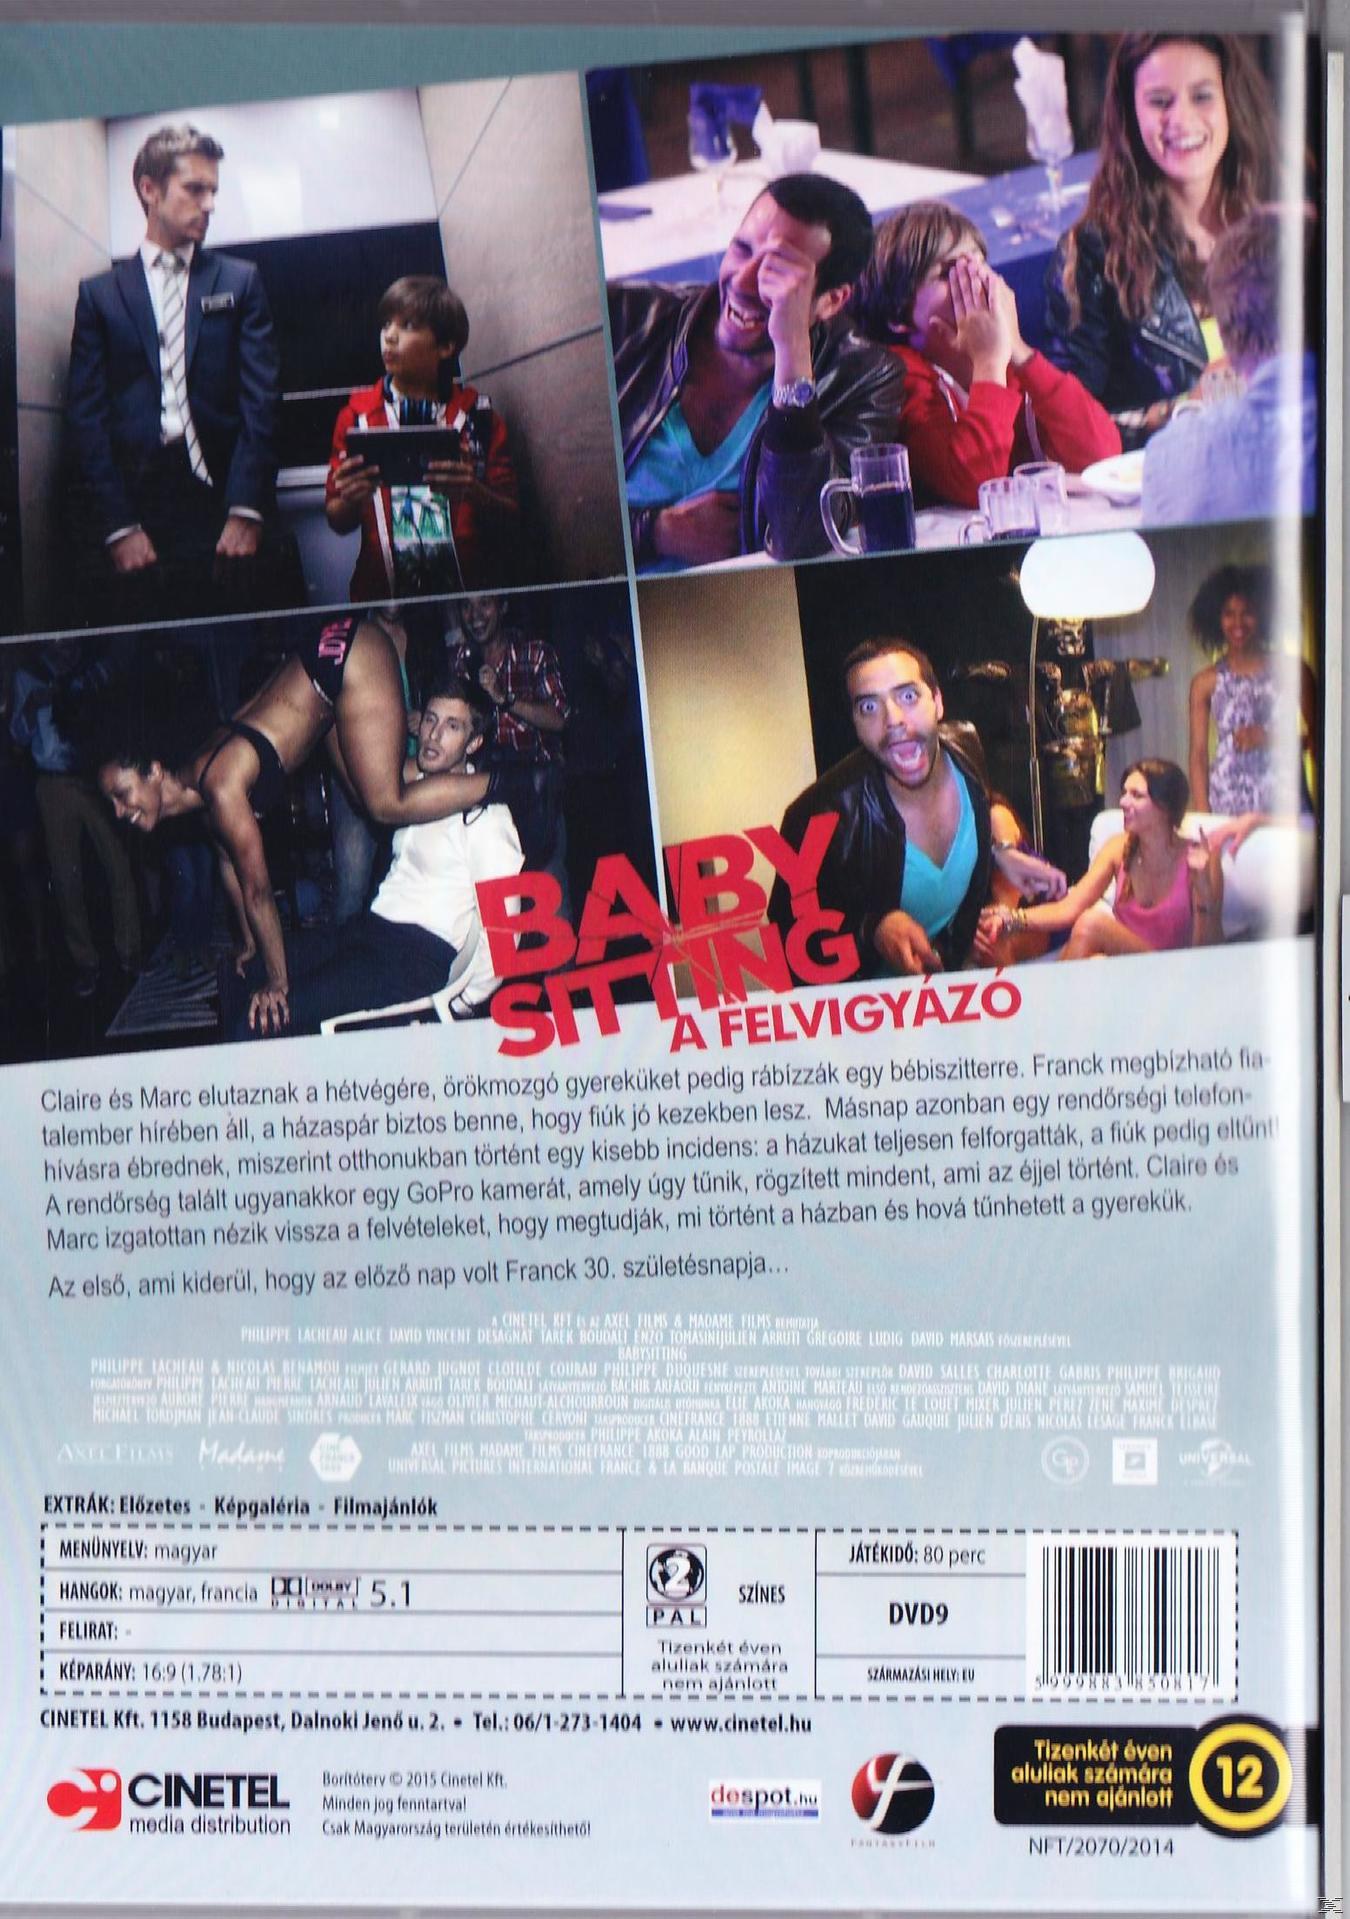 Babysitting - A felvigyázó (DVD)